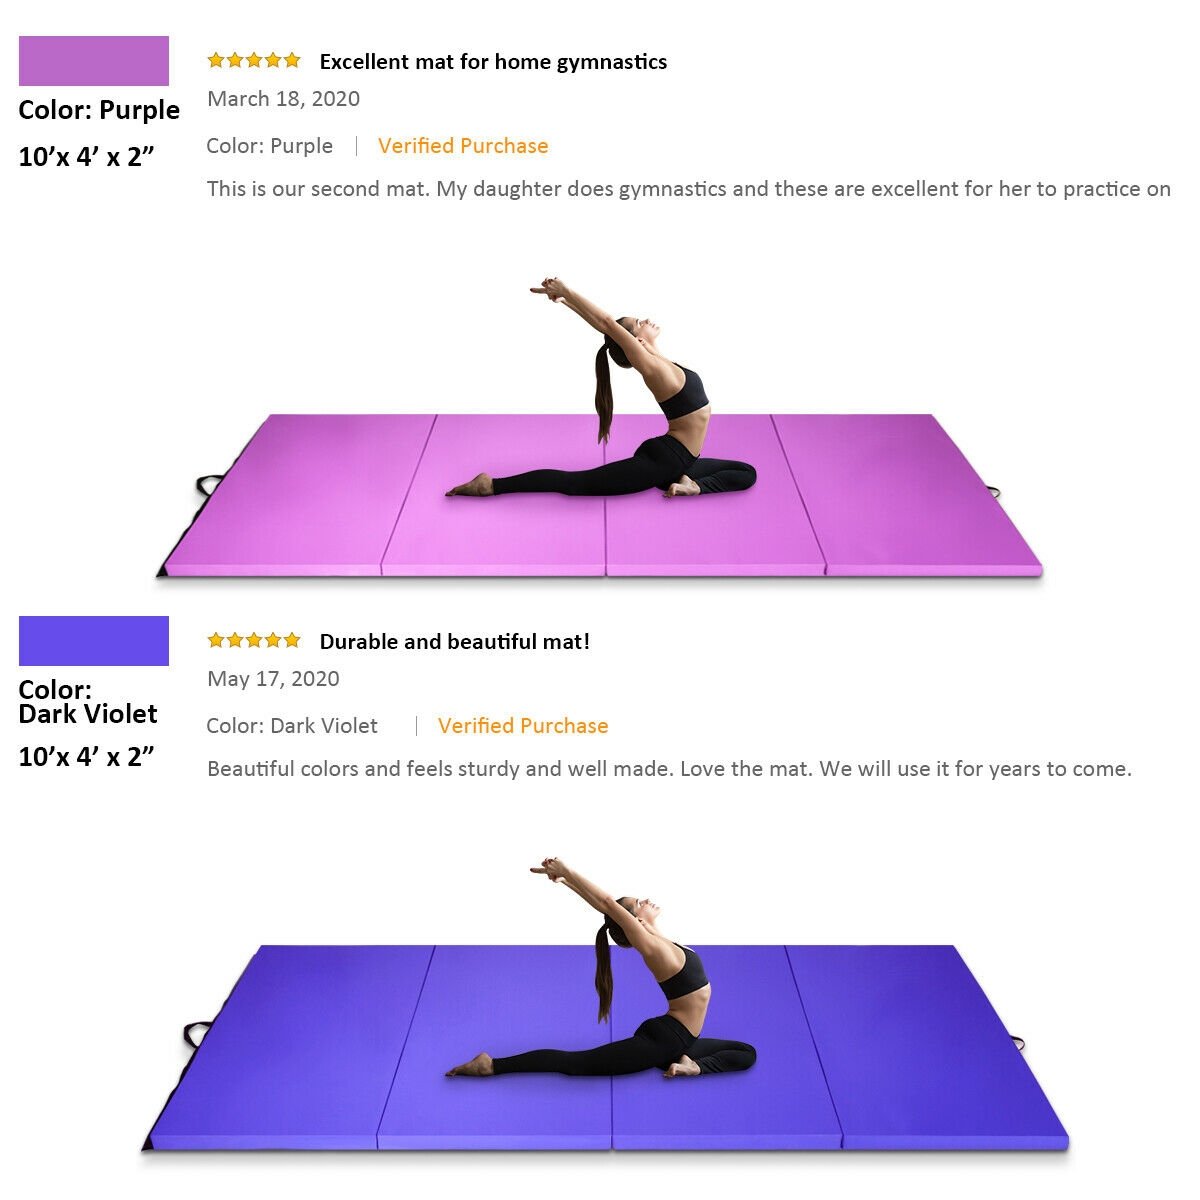 4 Feet x 10 Feet x 2 Inch Folding Gymnastics Tumbling Gym Mat, Purple - Gallery Canada